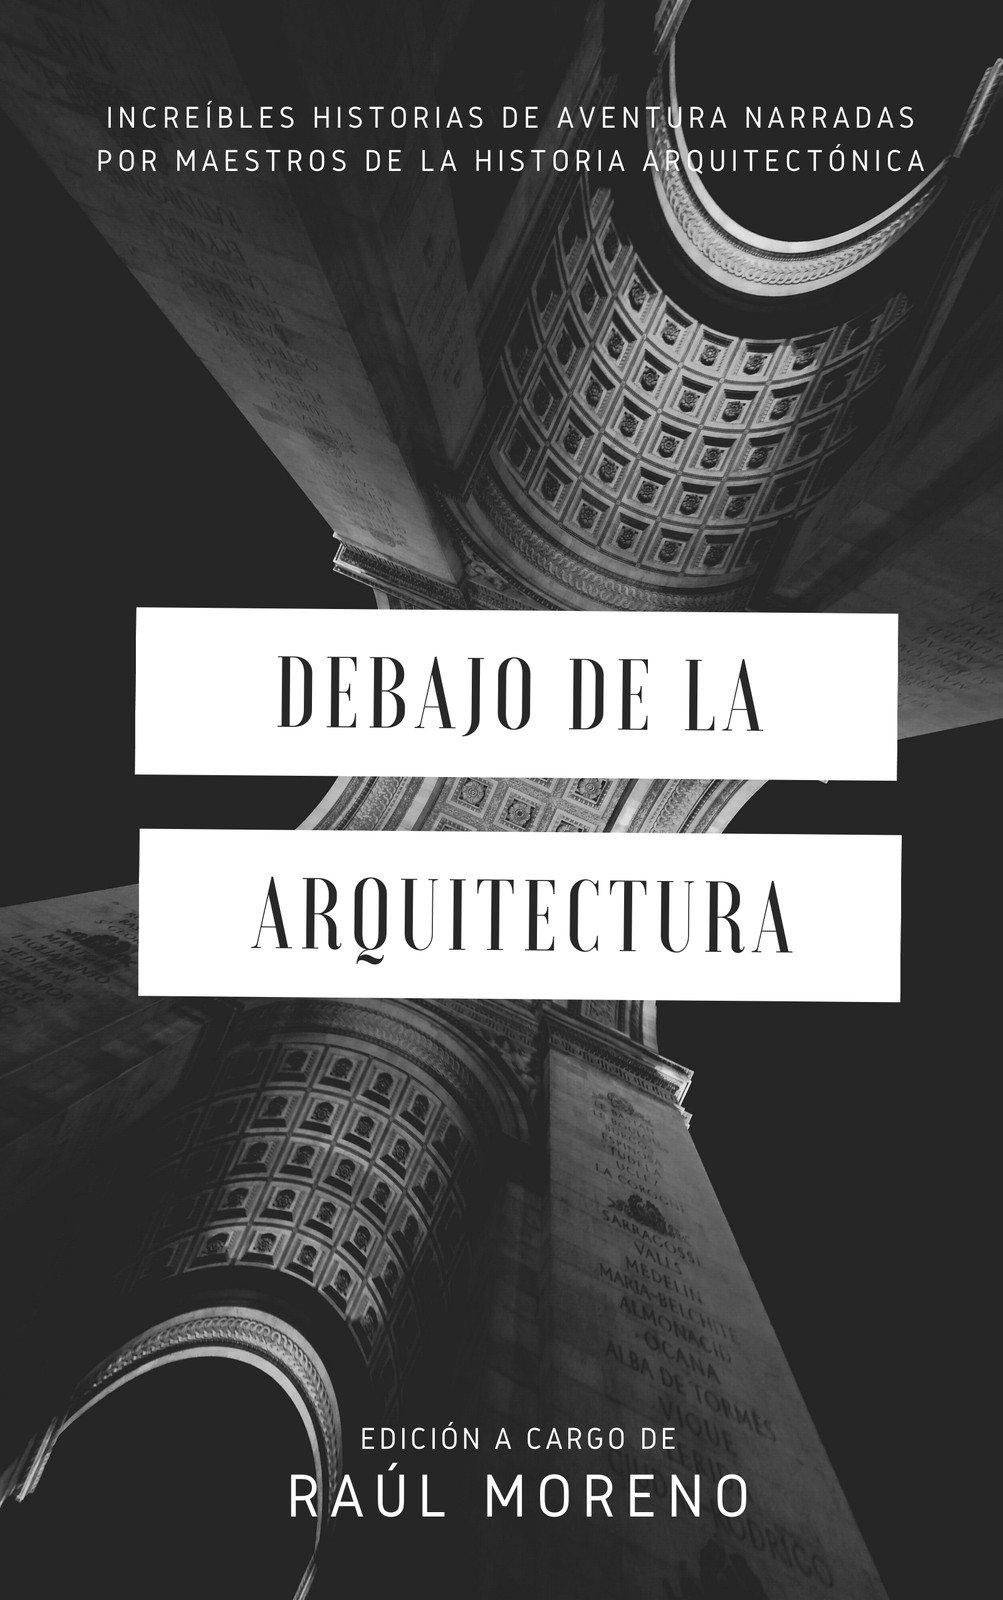 Plantillas para portadas de libros de arquitectura | Canva